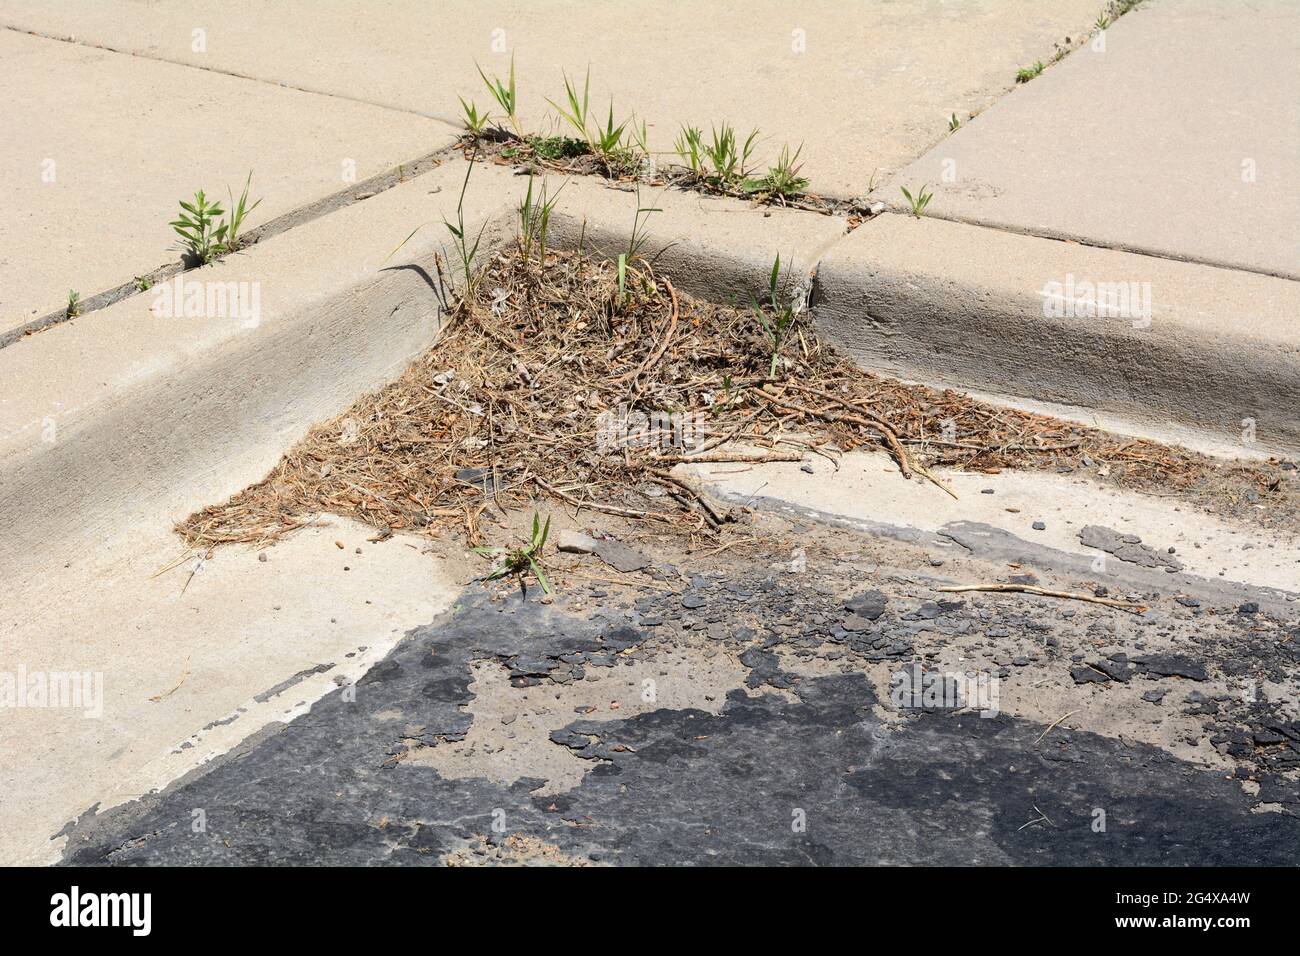 Le printemps, l'asphalte du stationnement est brisé et les nouvelles pousses de printemps poussent dans des fissures ou des joints de trottoir Banque D'Images